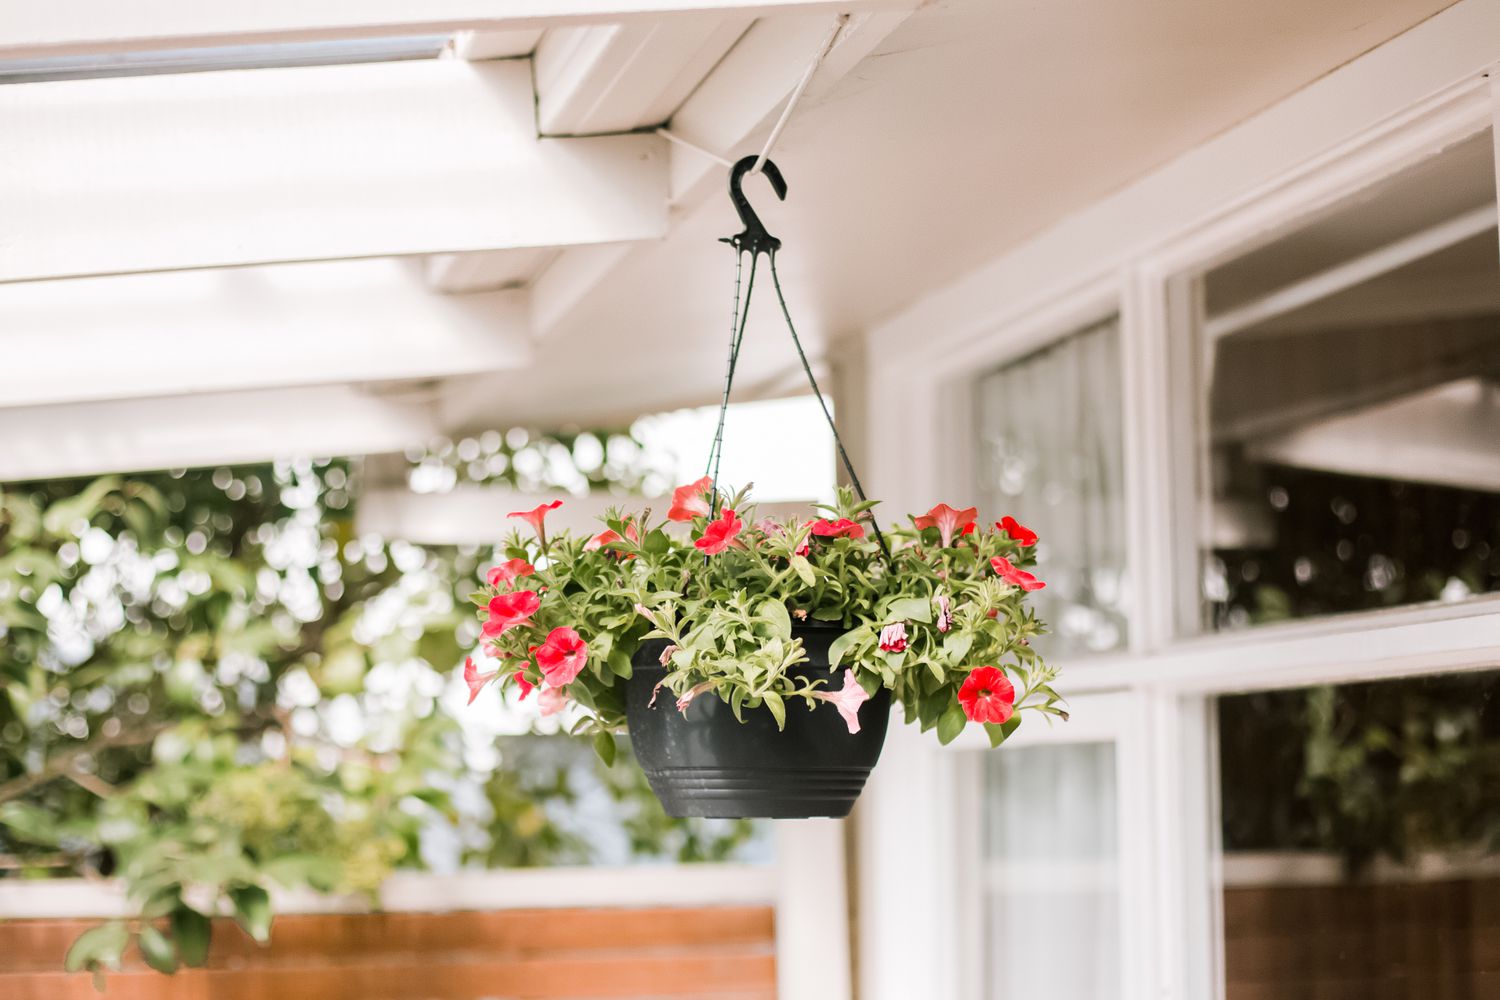 petunias in a hanging basket